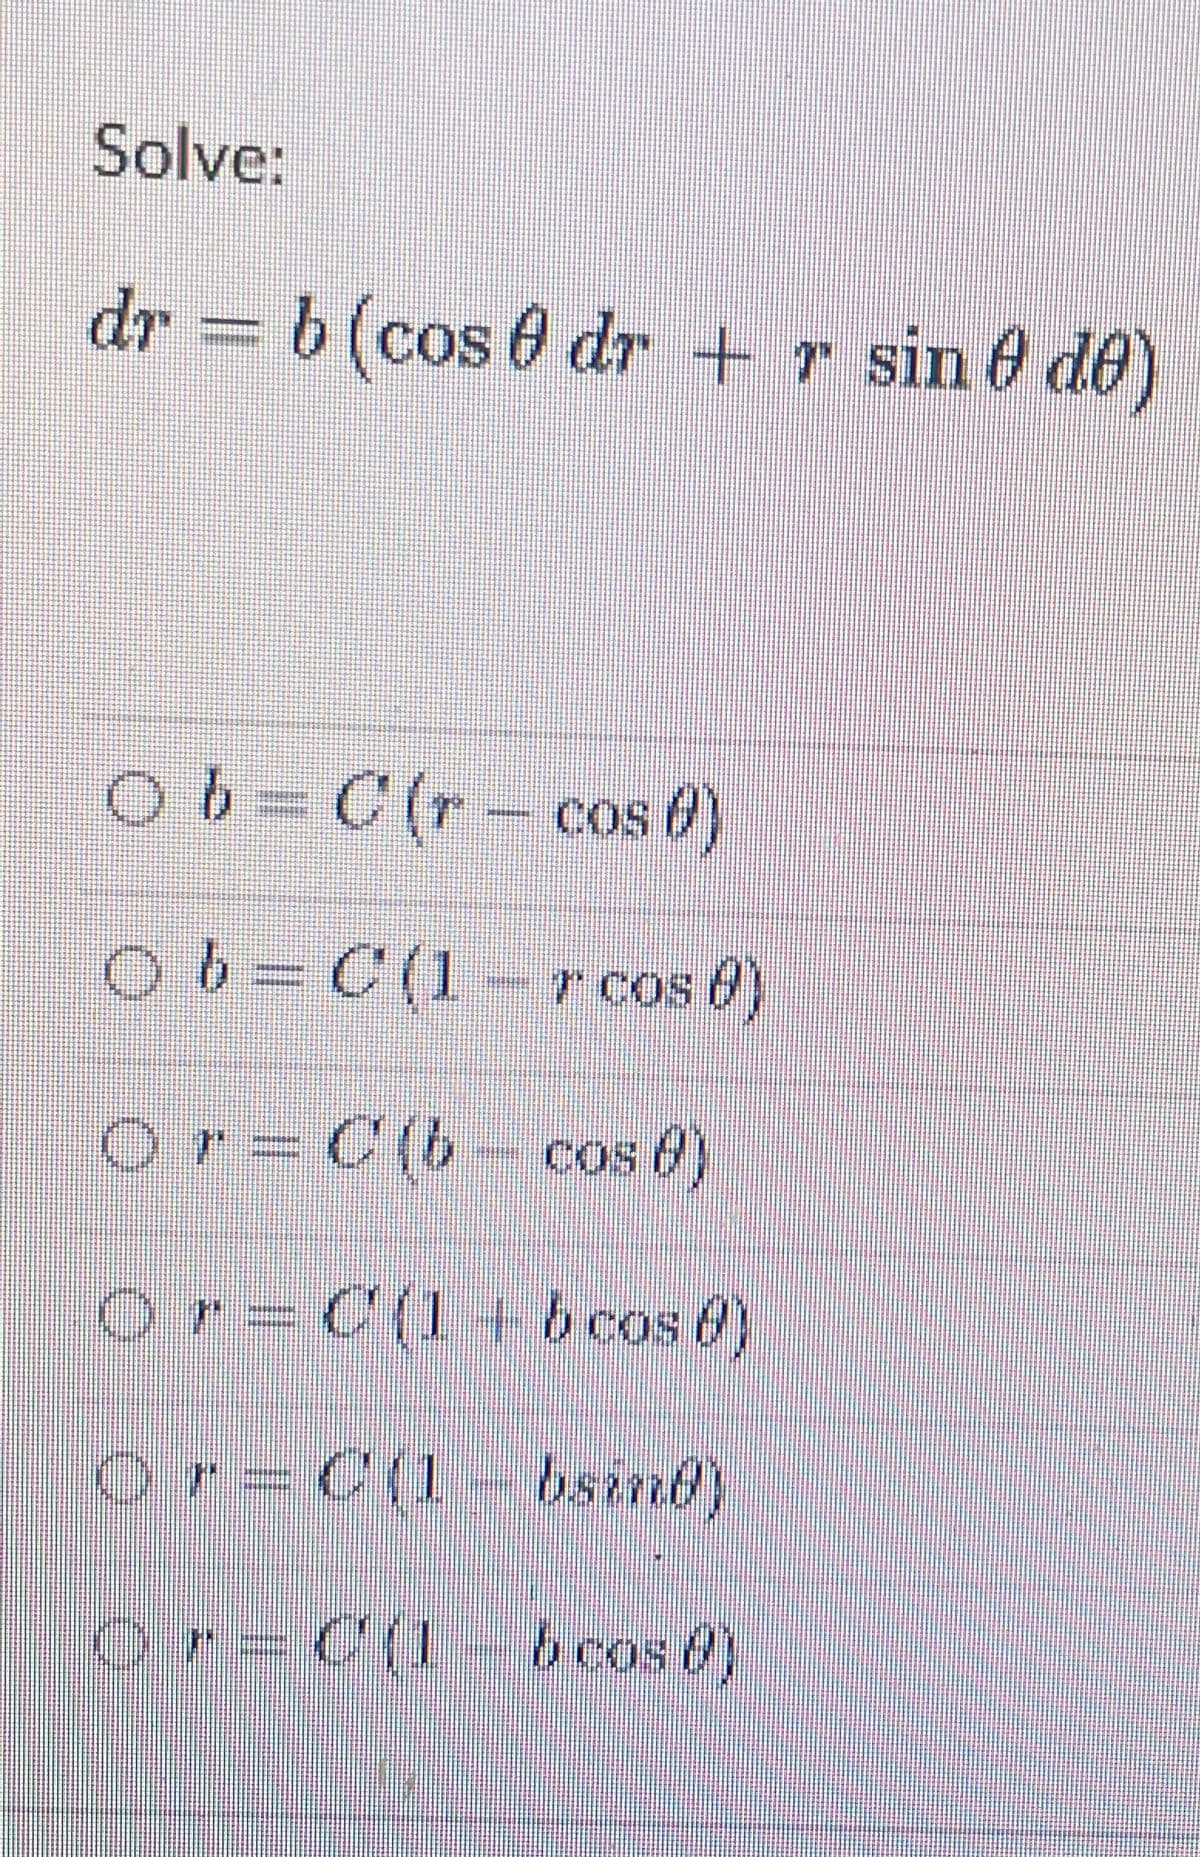 Solve:
dr = b (cos 0 dr
+ r sin 6 de)
Ob=C(r- cos 6)
063C(1-r cos 0)
or= C(b- cos 0)
Or=C(1+ b cos 6)
or=C(1- bsind)
Or=C(1 6cos 6)
